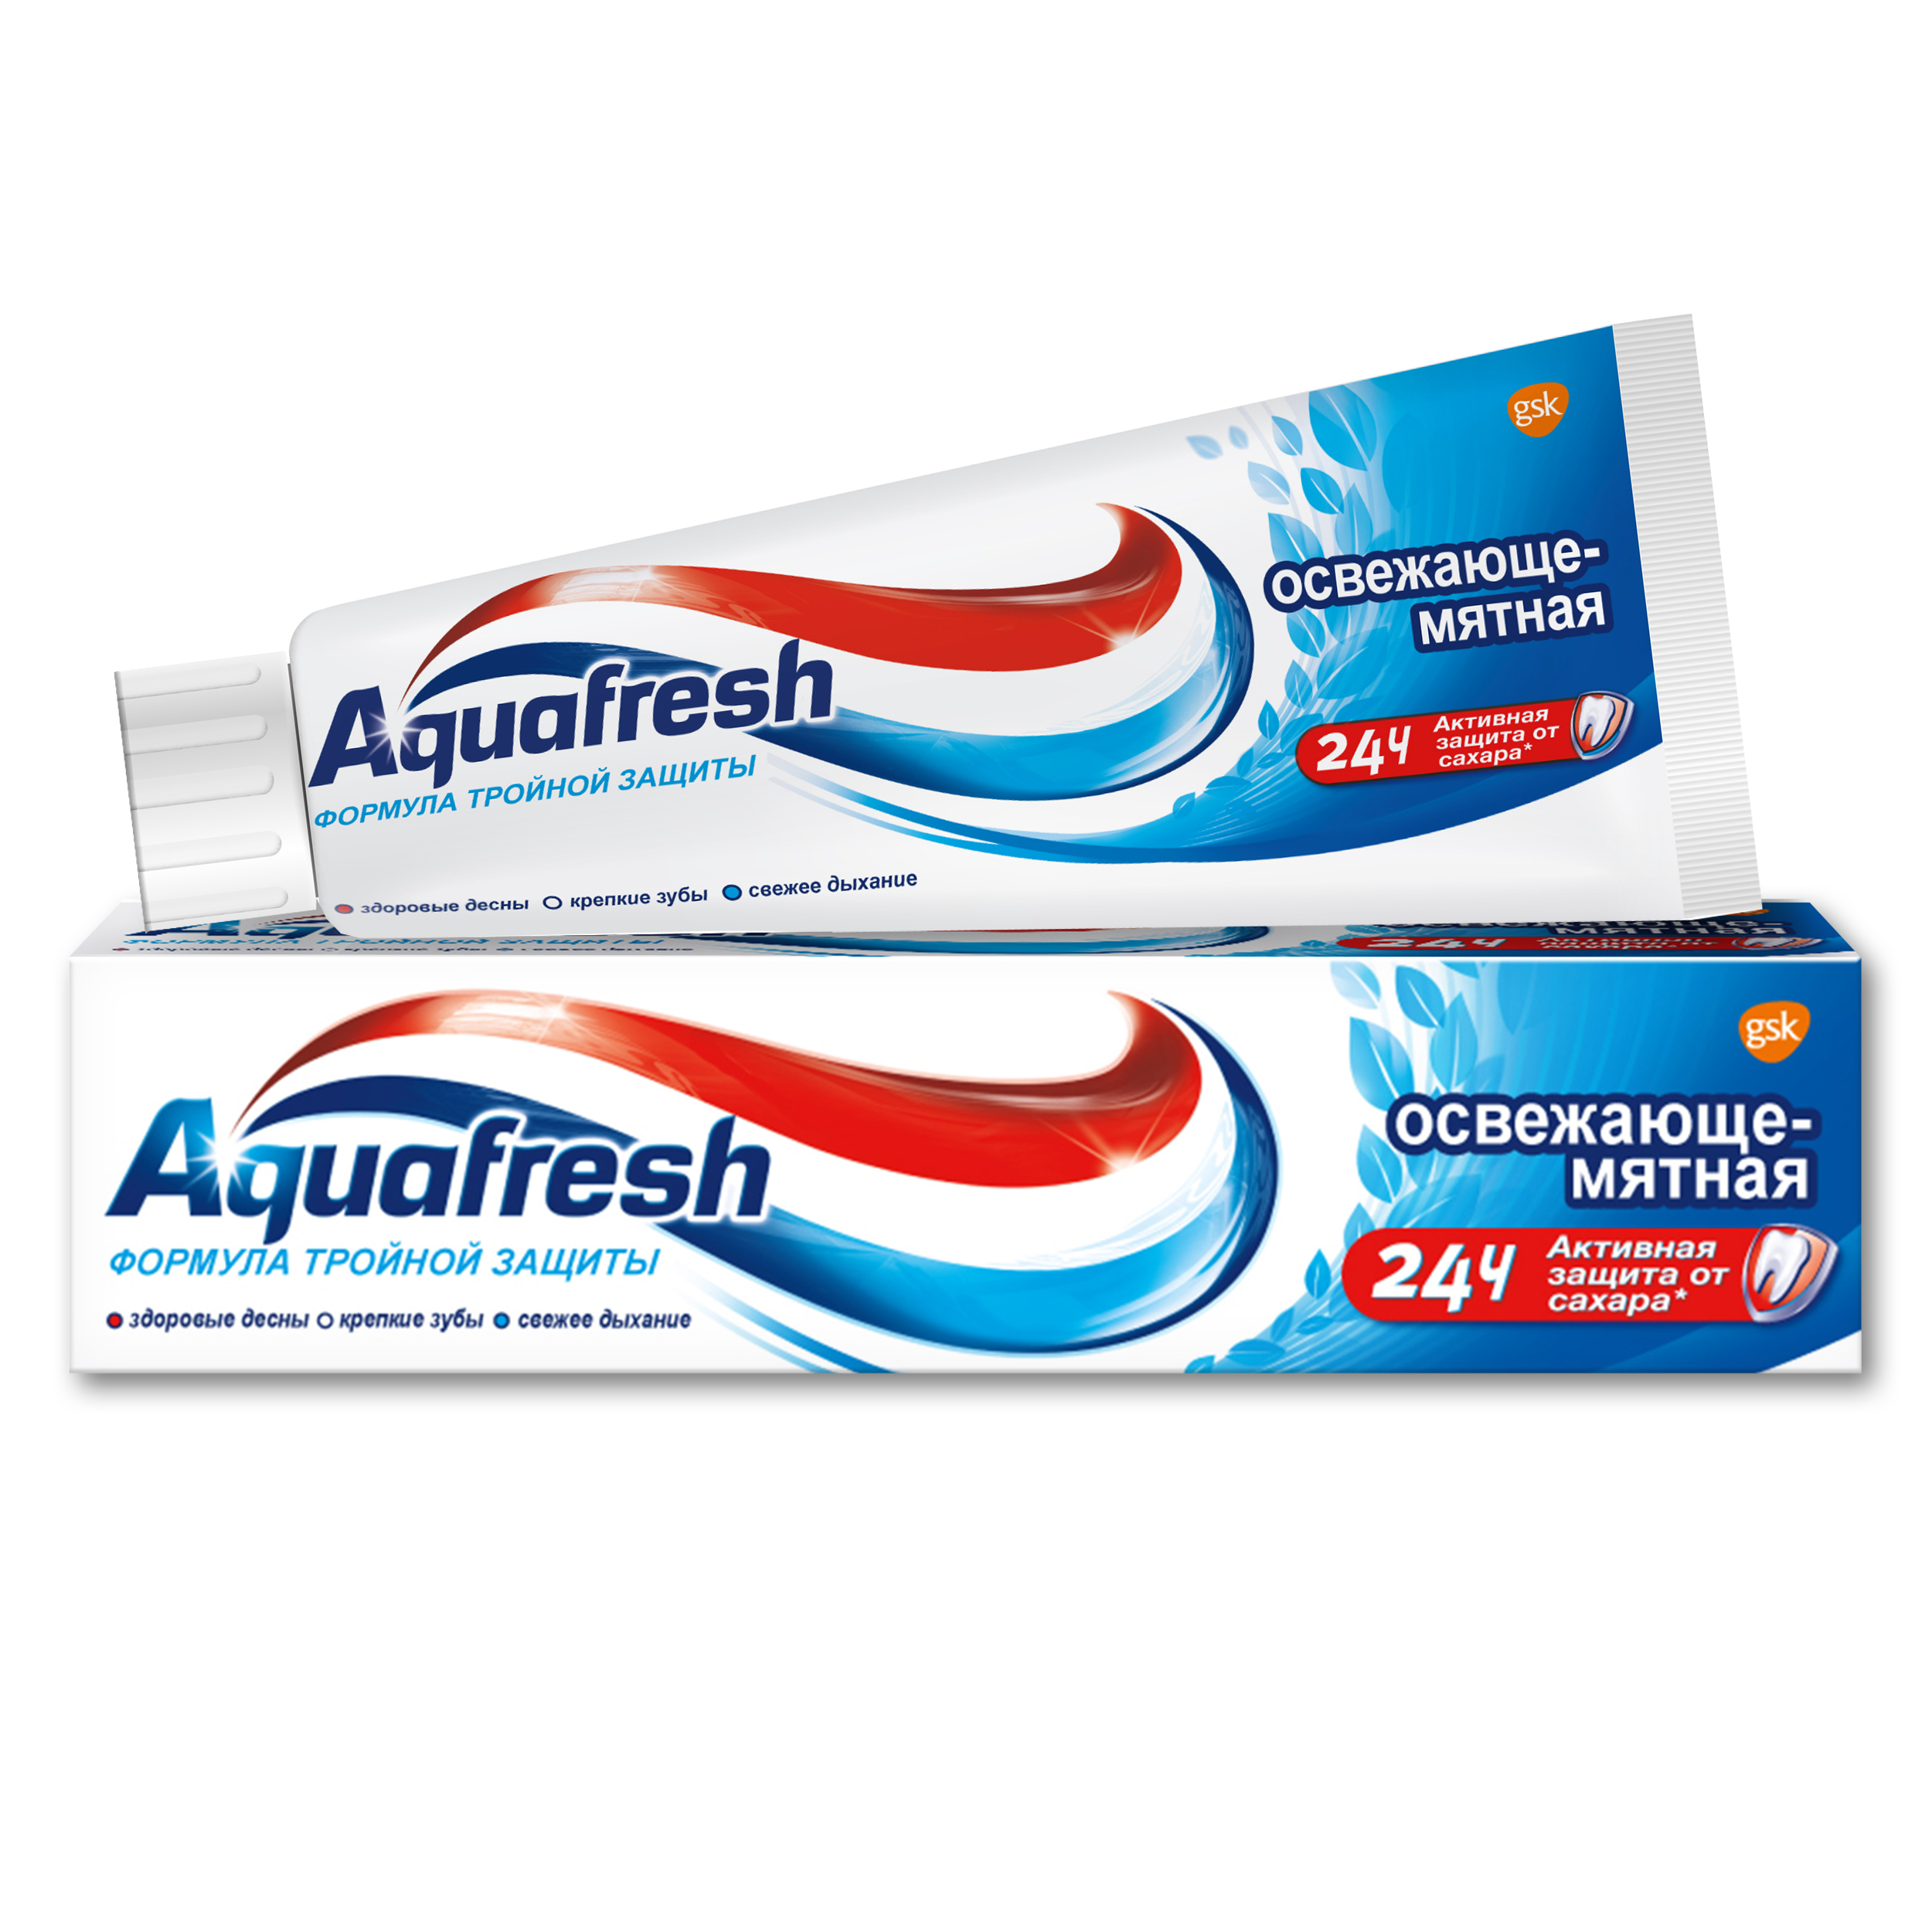 Зубная паста Aquafresh Освежающе-мятная 50 мл - фото 2